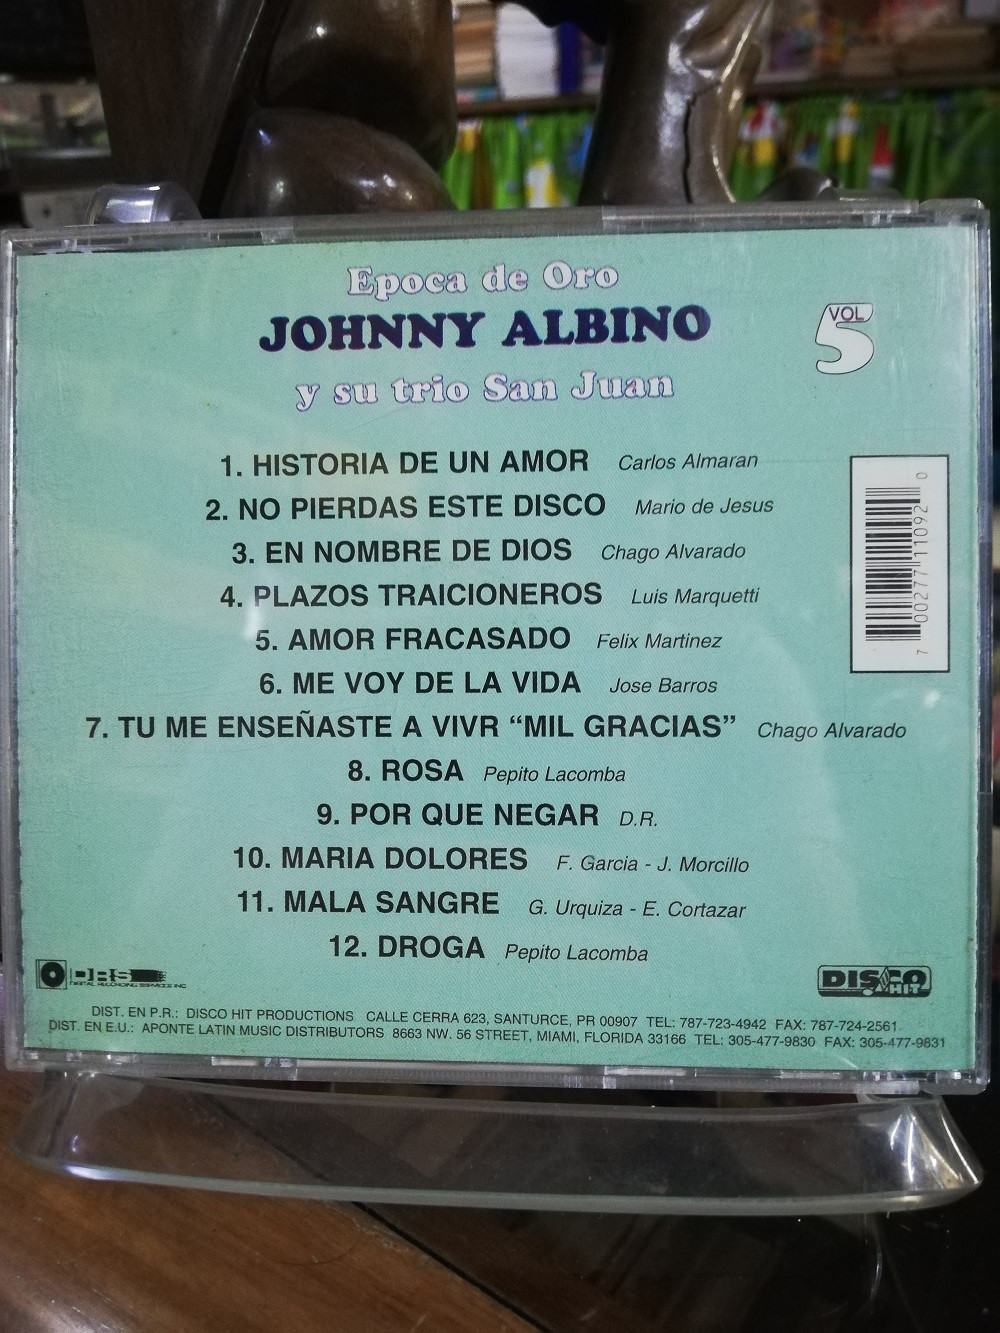 Imagen CD JHONNY ALBINO Y SU TRIO SAN JUAN - EPOCA DE ORO VOL. 5 2